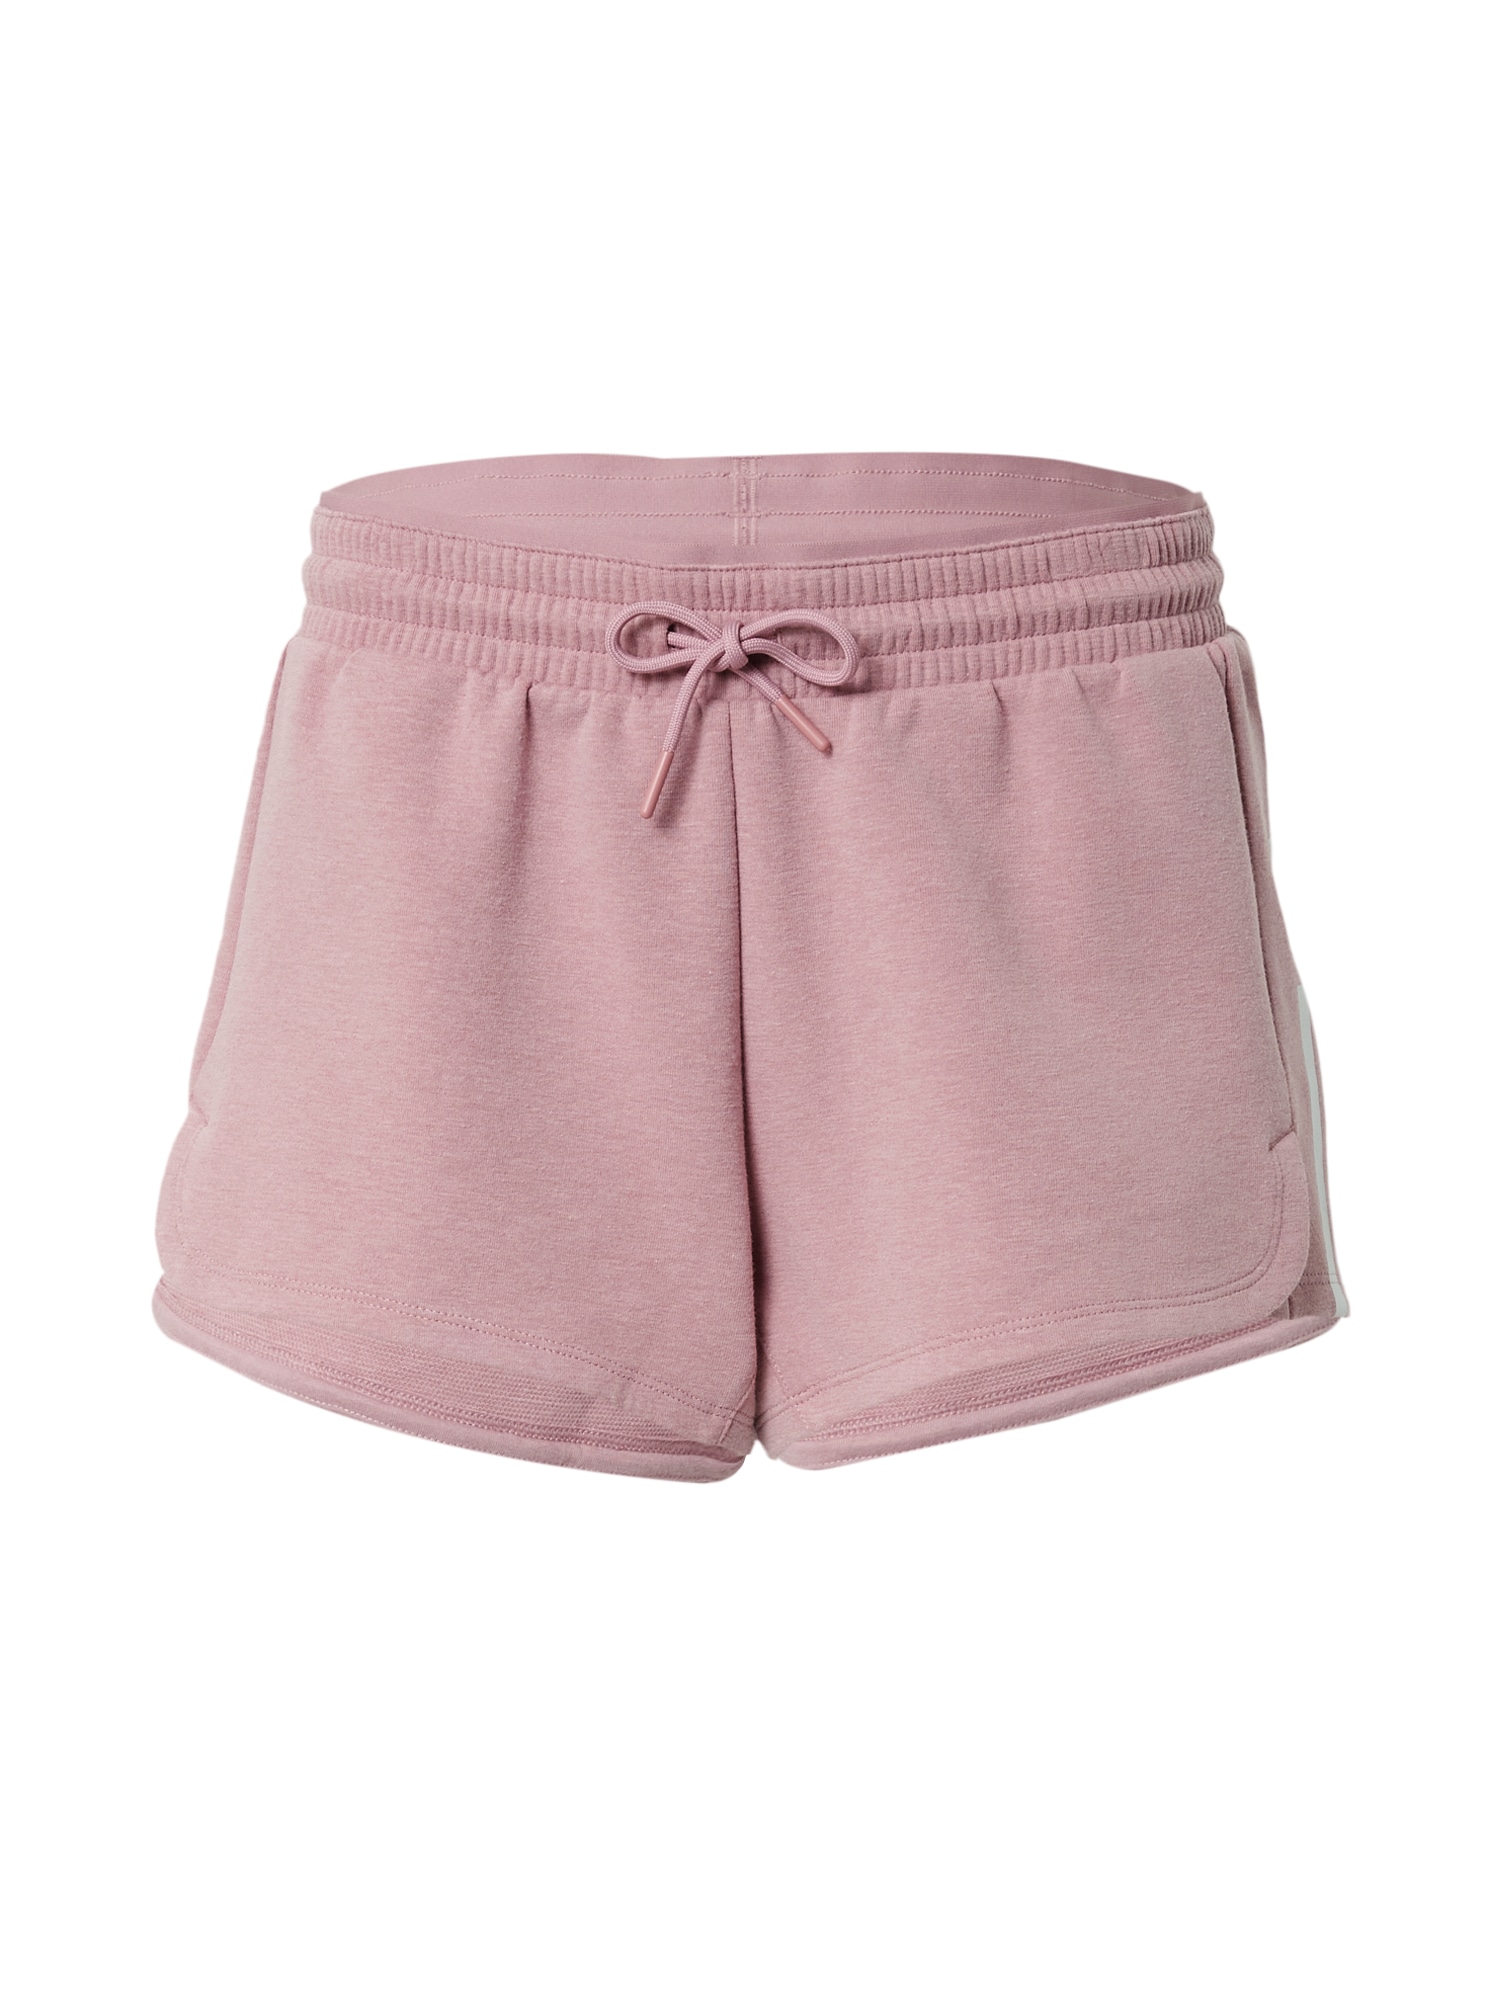 ADIDAS PERFORMANCE Sportinės kelnės 'Train Essentials' ryškiai rožinė spalva / balta